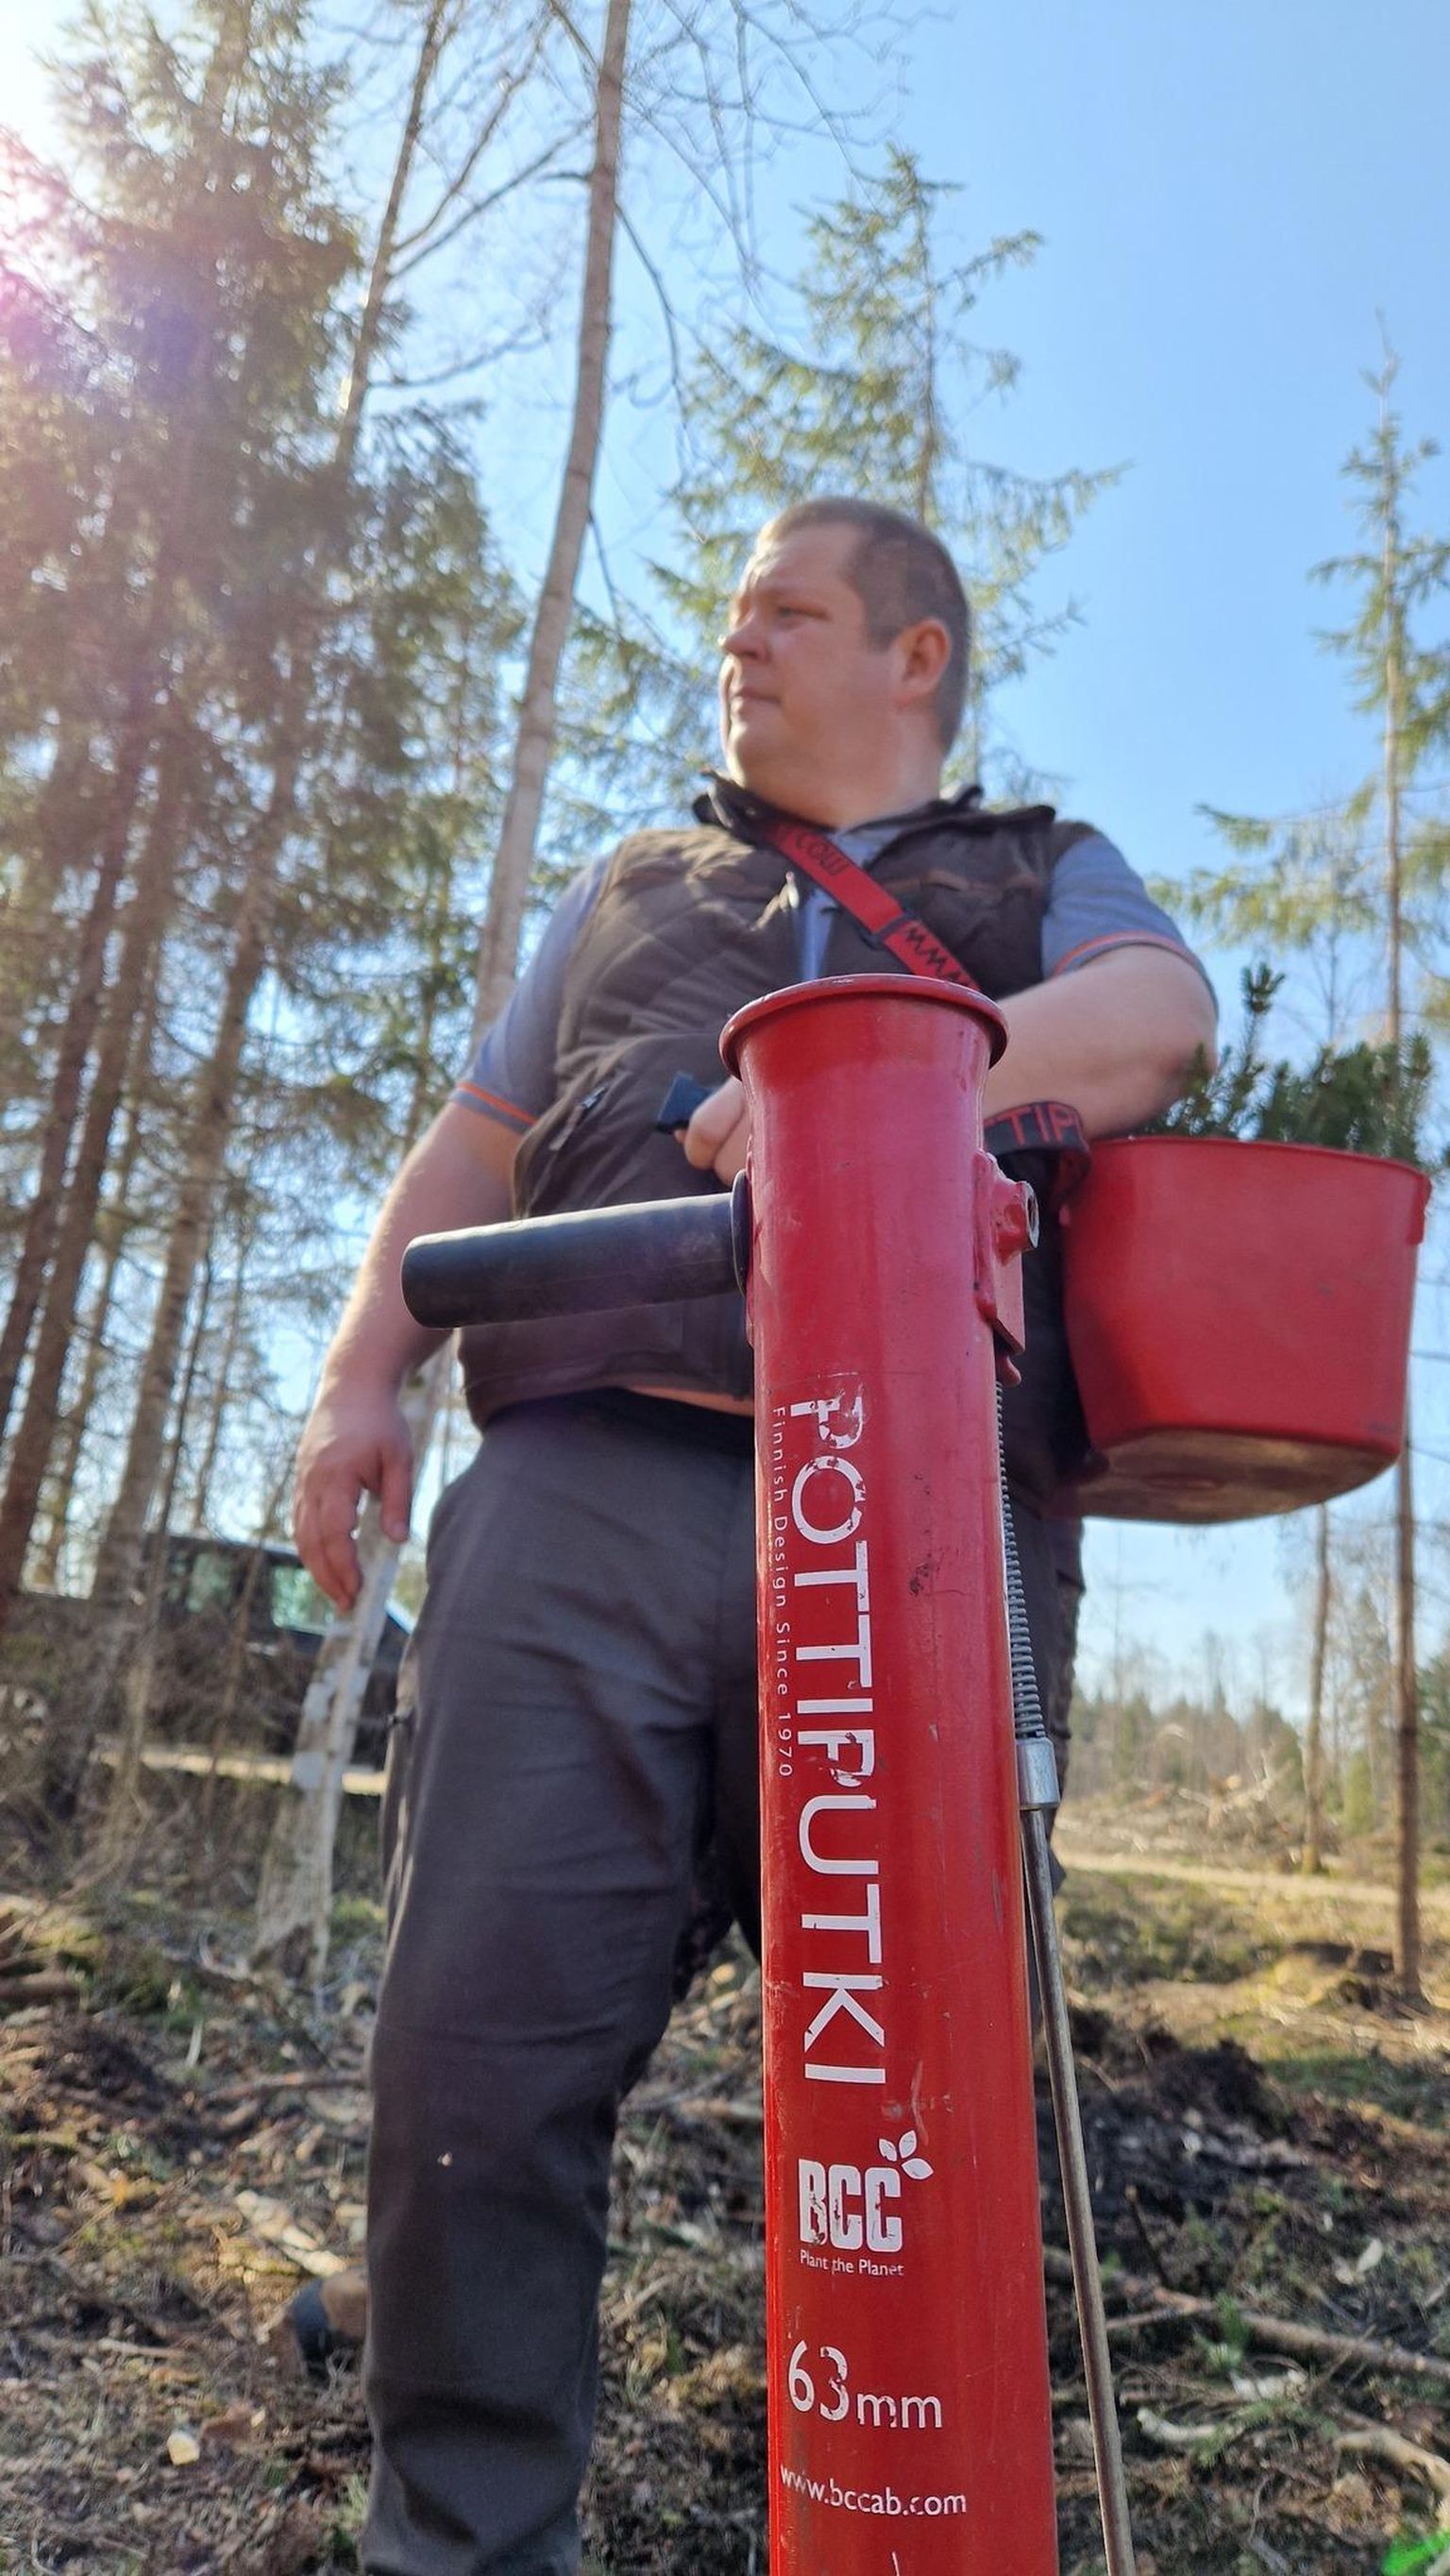 Keskkonnaminister Erki Savisaar käis möödunud nädalavahetusel Raplamaal Russalus Vaikre metsanduse ja pärandkultuuri õpperaja lähistel metsa istutamas. FOTO: keskkonnaministeerium